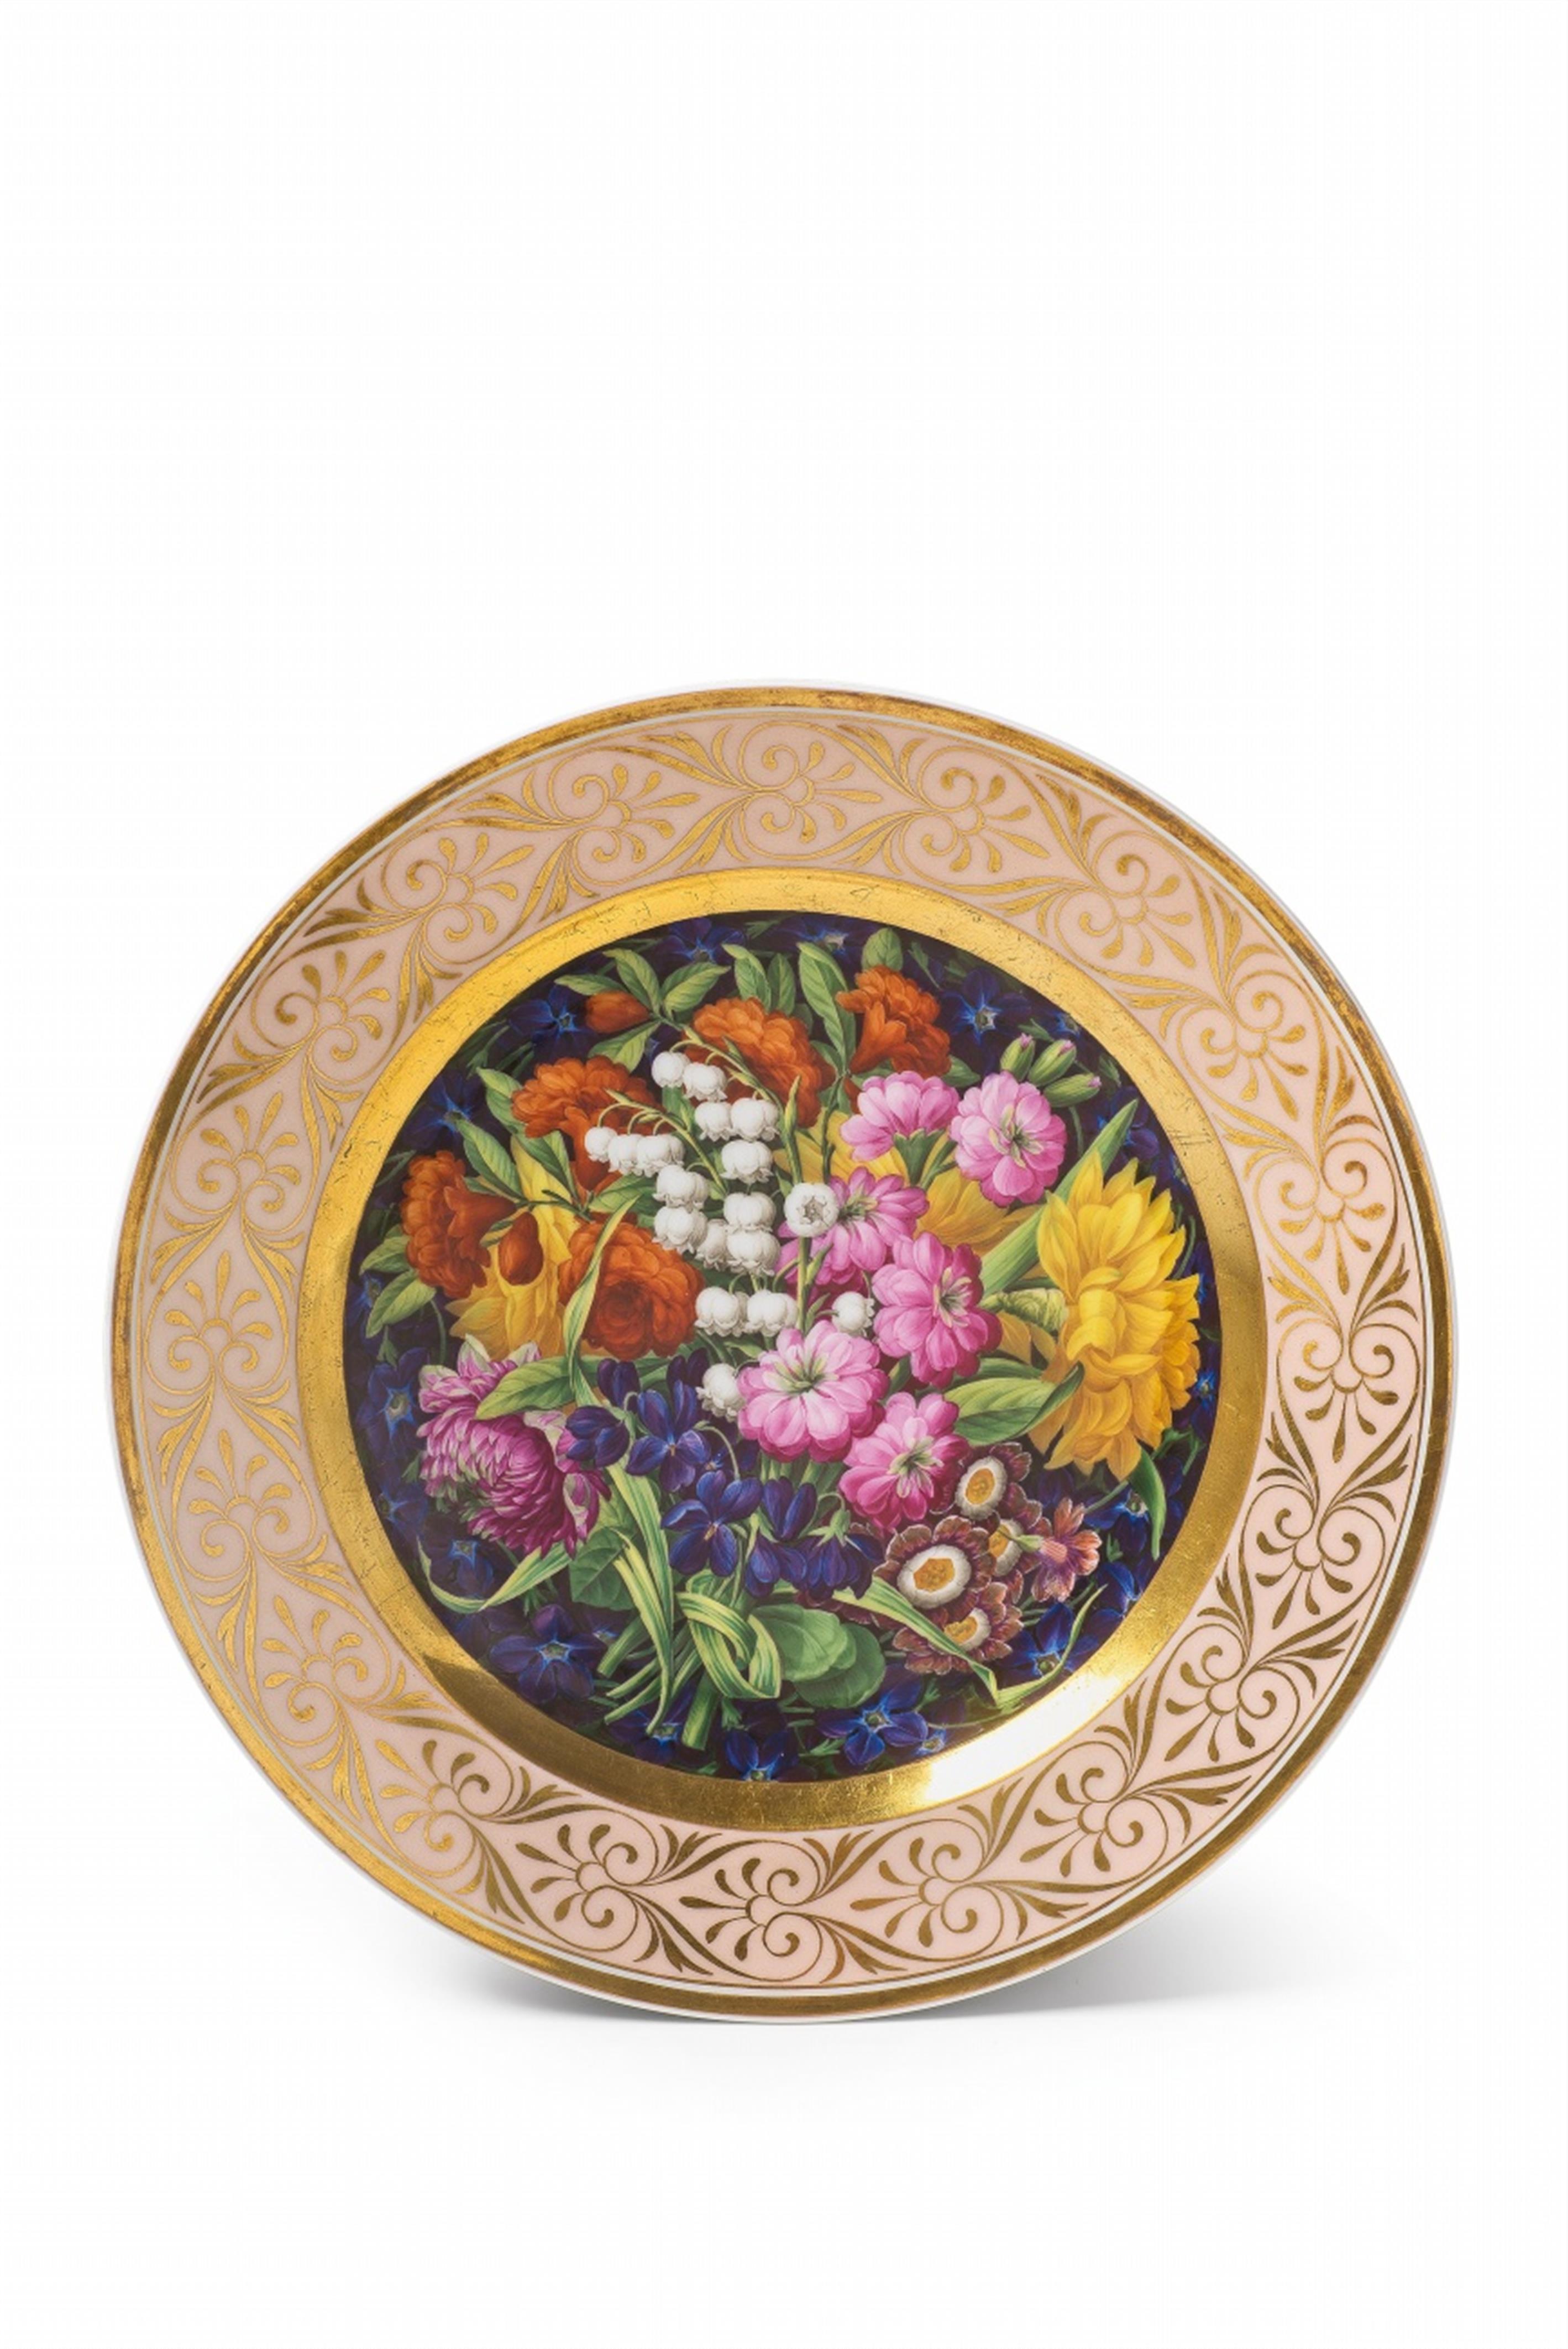 A Berlin KPM porcelain plate with a large floral bouquet - image-1